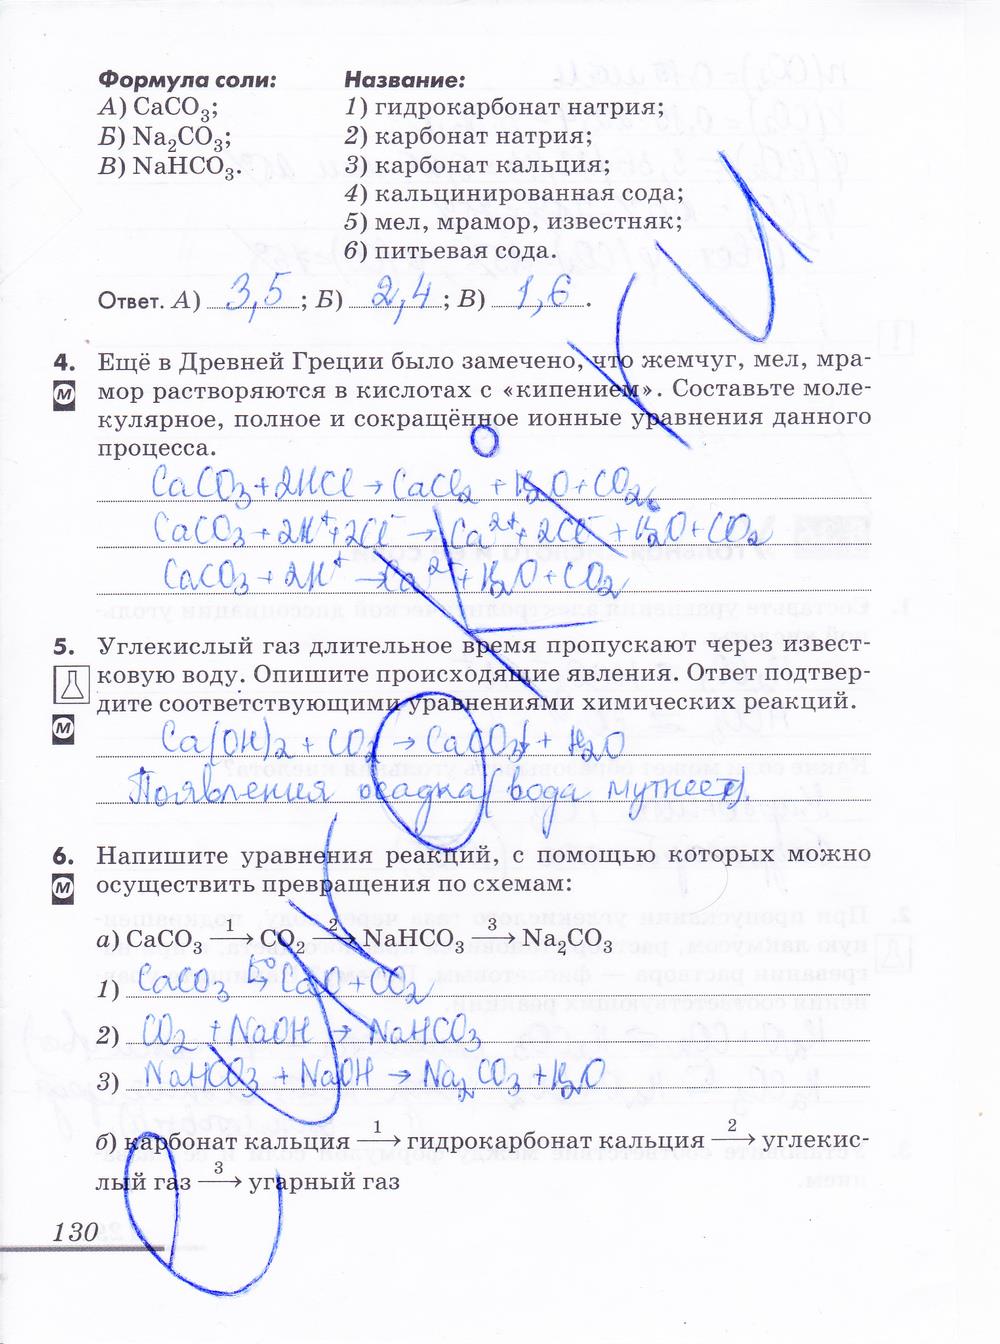 гдз 9 класс рабочая тетрадь страница 130 химия Еремин, Дроздов